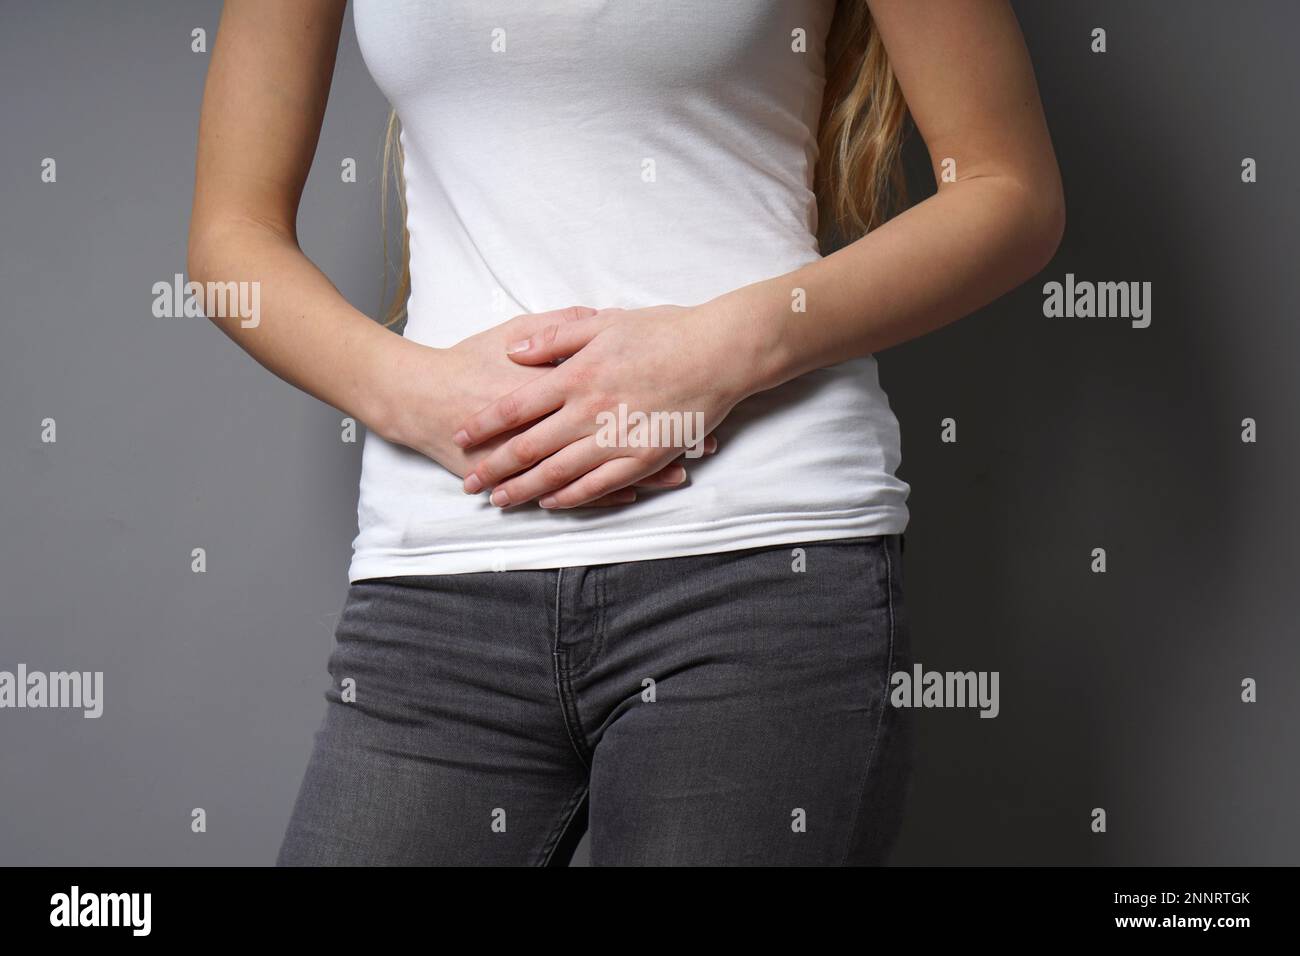 Unerkannte junge Frau, die ihren Magen mit beiden Händen hält - Konzept für Dysmenorrhoe, Bauchschmerzen, Reizdarmsyndrom, Bauch oder Magen Stockfoto